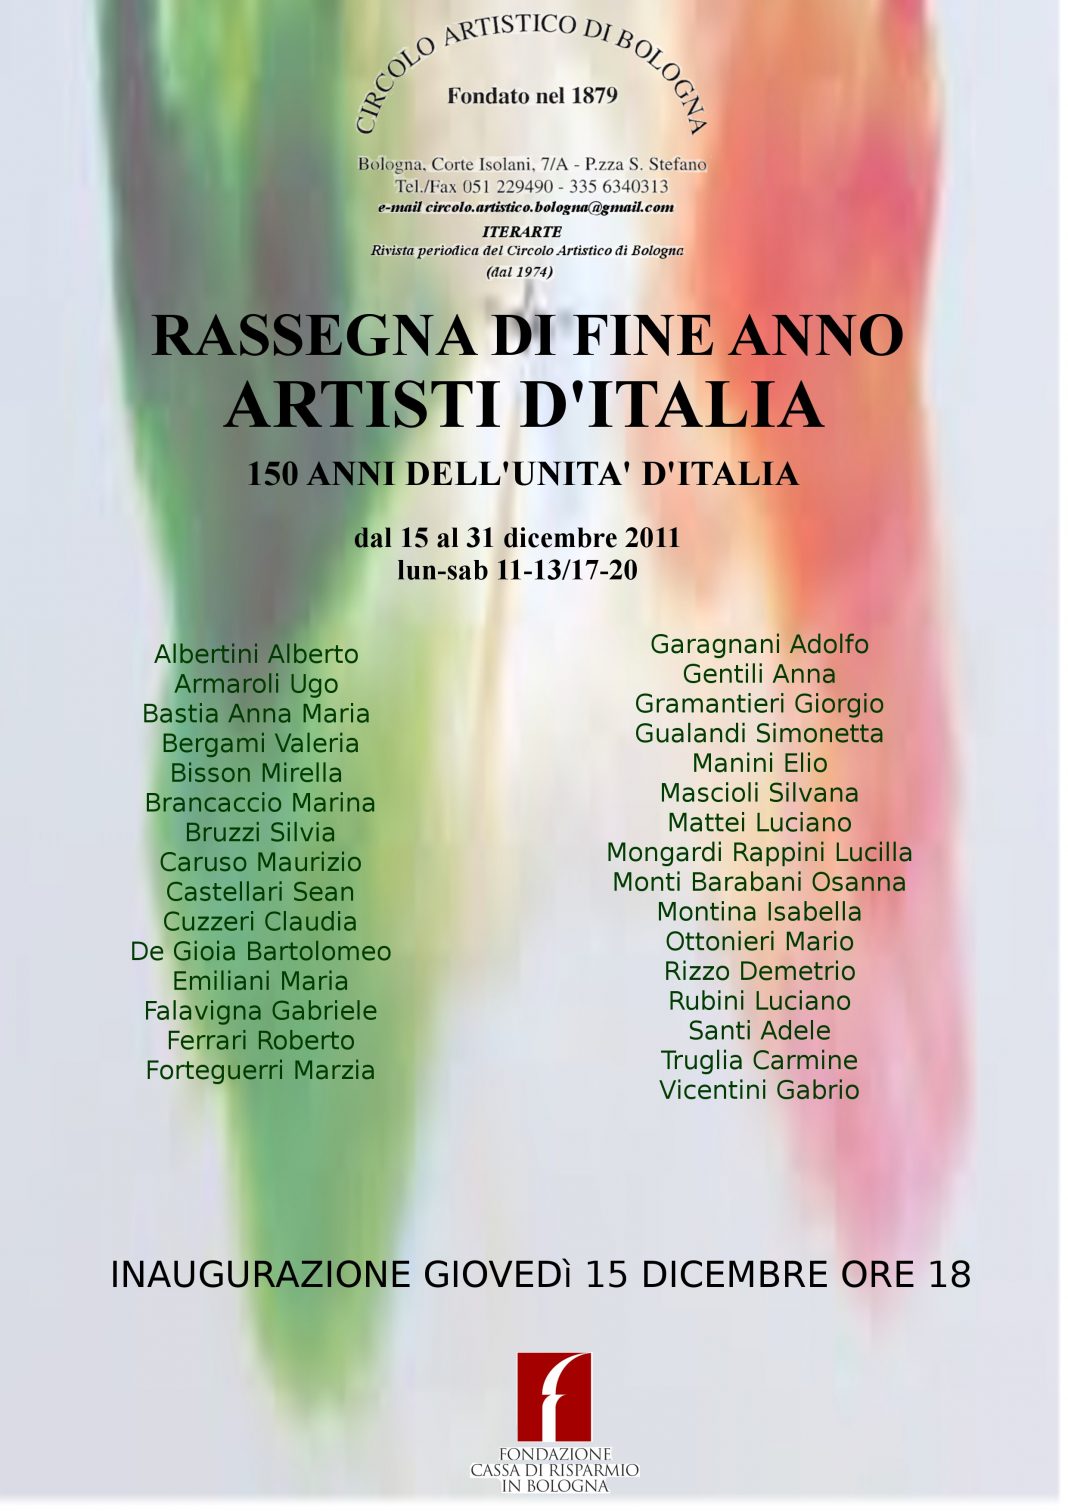 Artisti d’Italiahttps://www.exibart.com/repository/media/eventi/2011/12/artisti-d8217italia-1068x1511.jpg